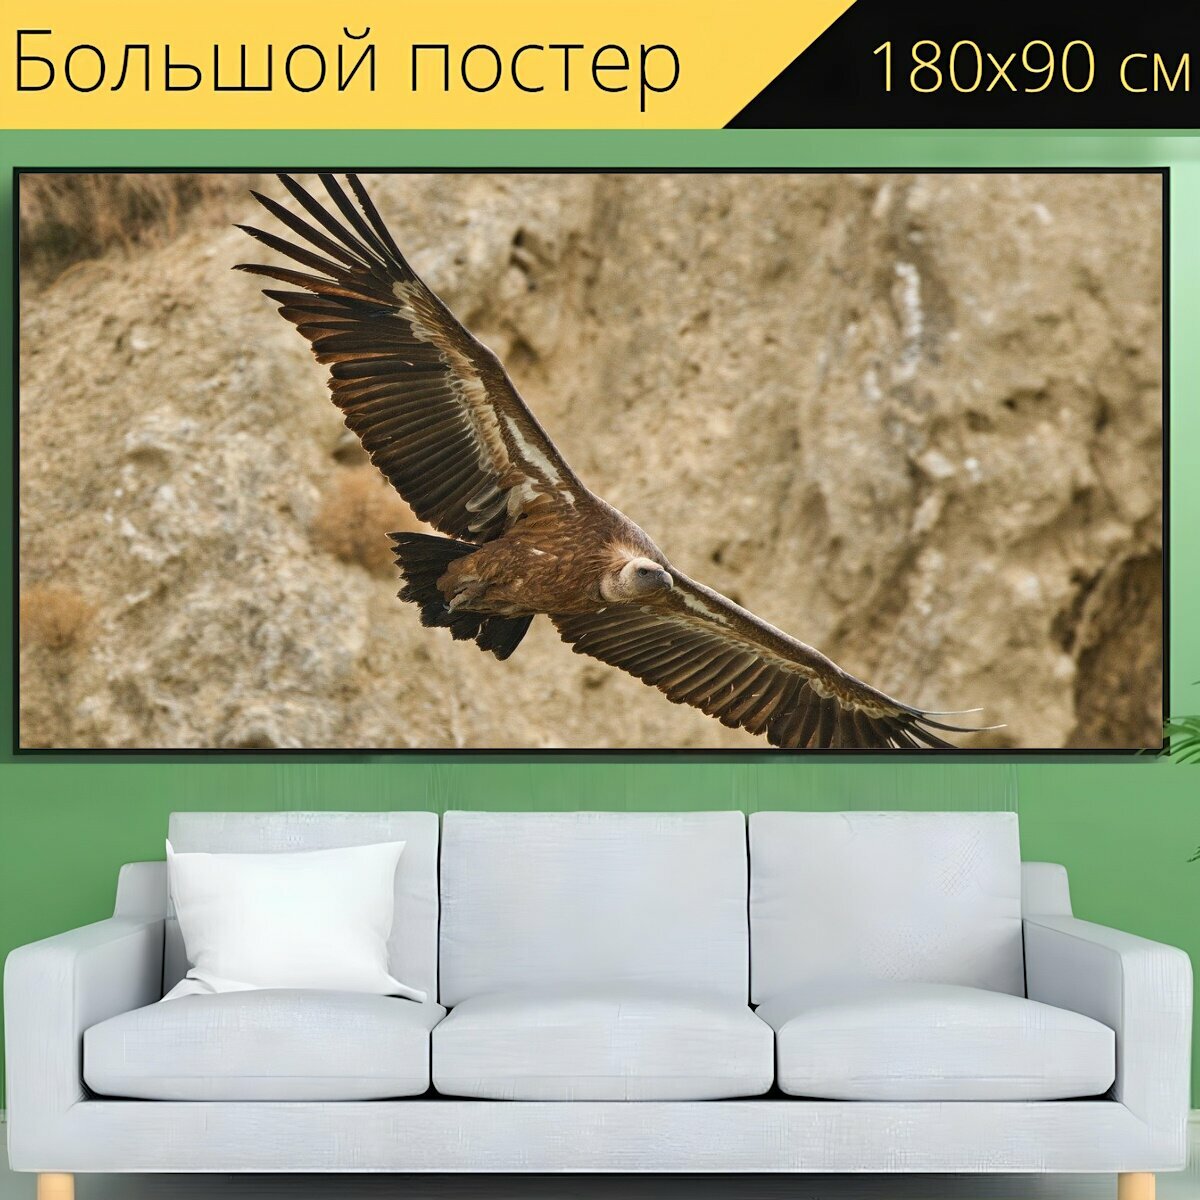 Большой постер "Стервятник, птица, летающий" 180 x 90 см. для интерьера